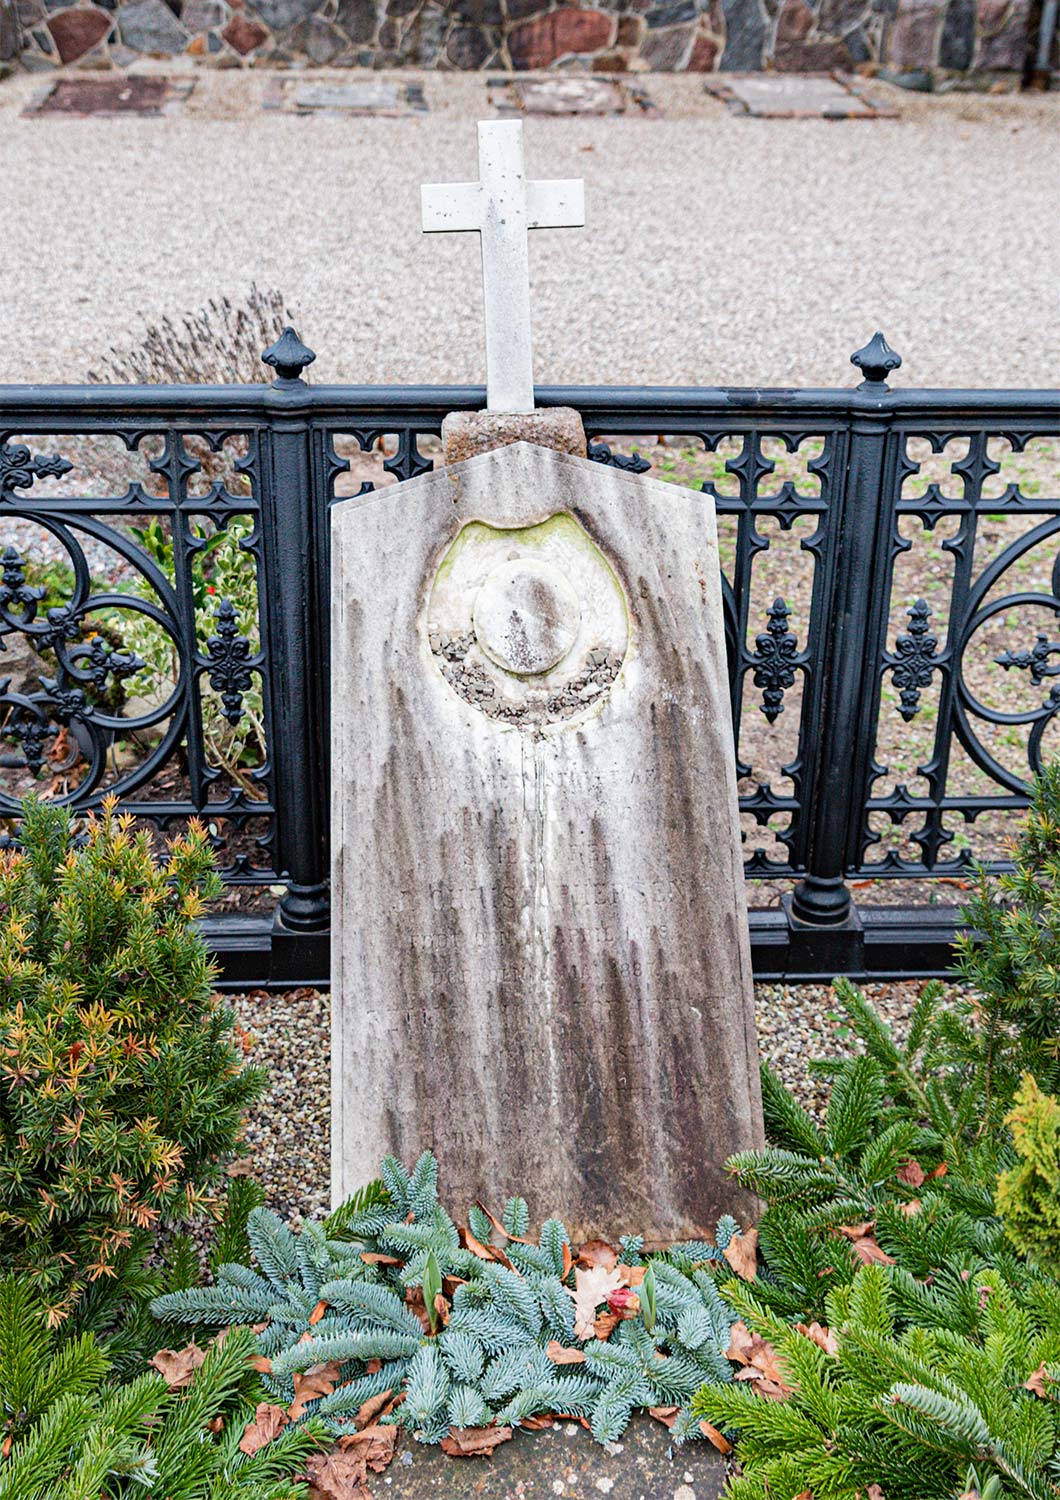 På Isbrandtsens familiegravsted er der fjernet en marmorkrans – og gravstenen er revnet i samme forbindelse. Foto: HAS.